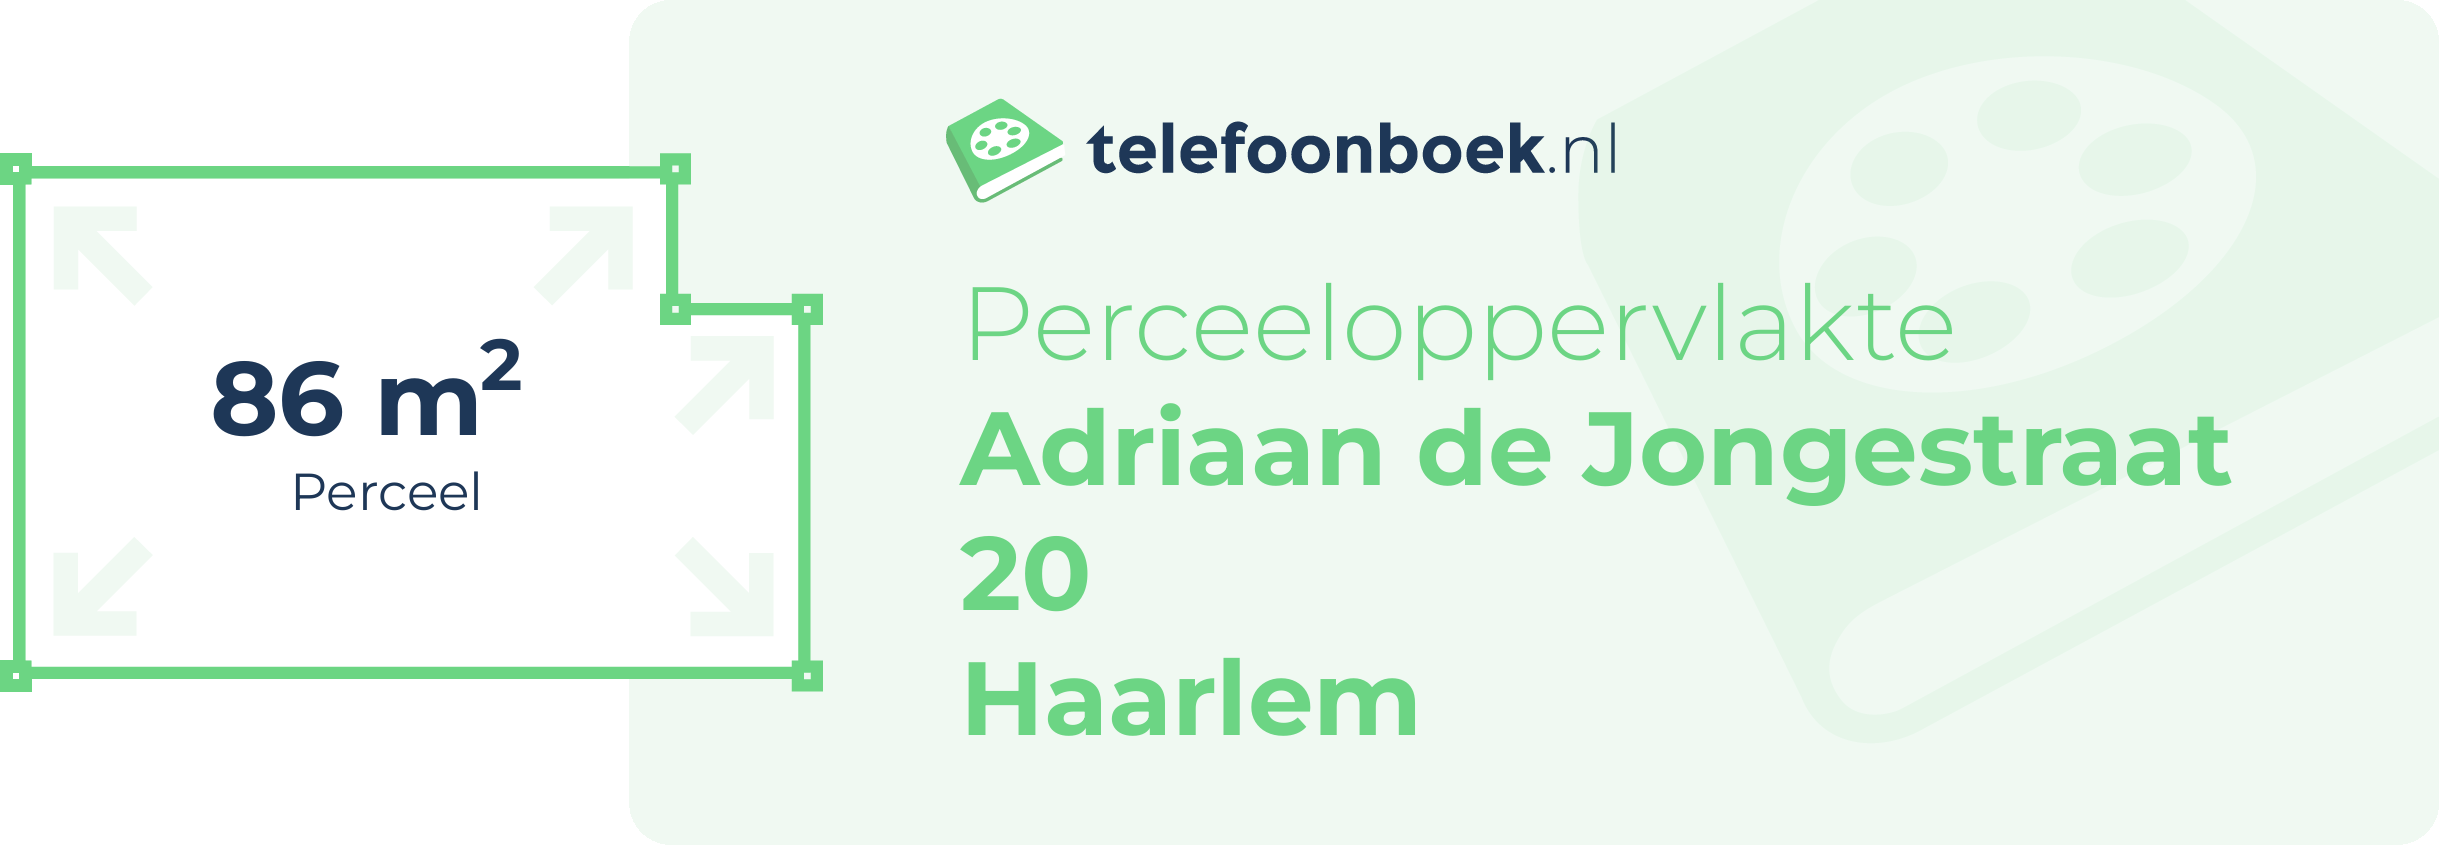 Perceeloppervlakte Adriaan De Jongestraat 20 Haarlem